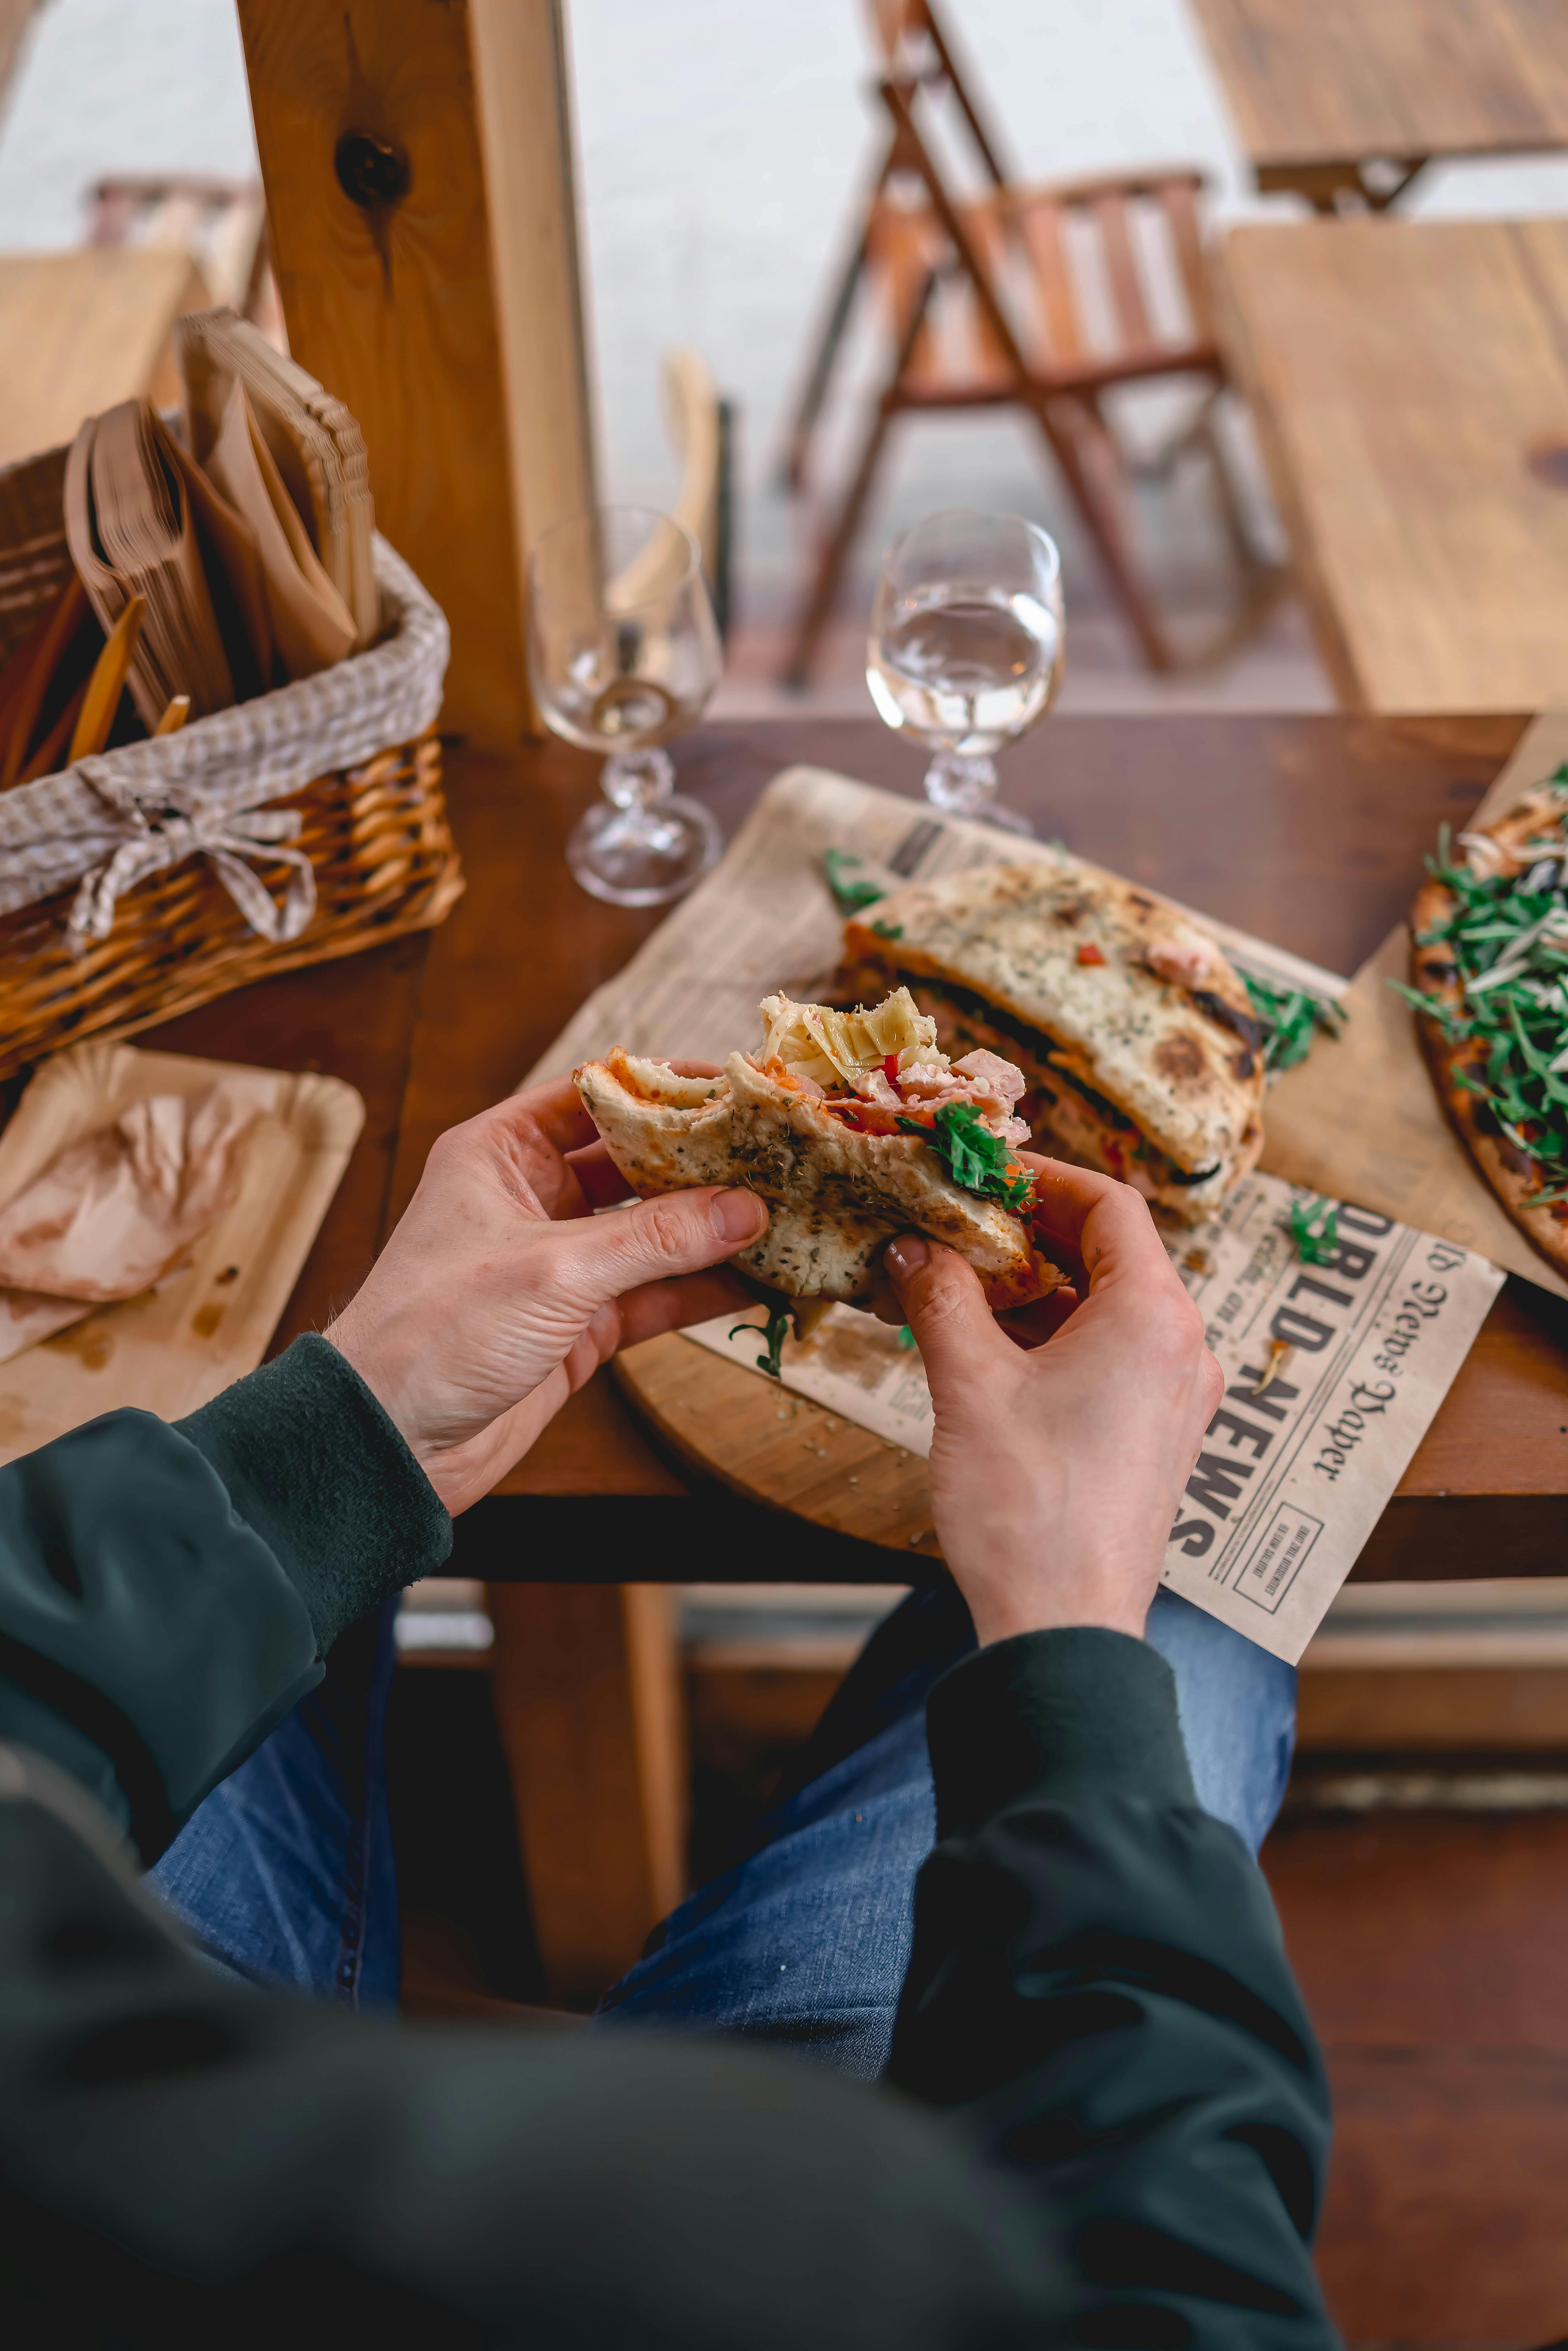 A man holding a half-eaten sandwich | Source: Pexels